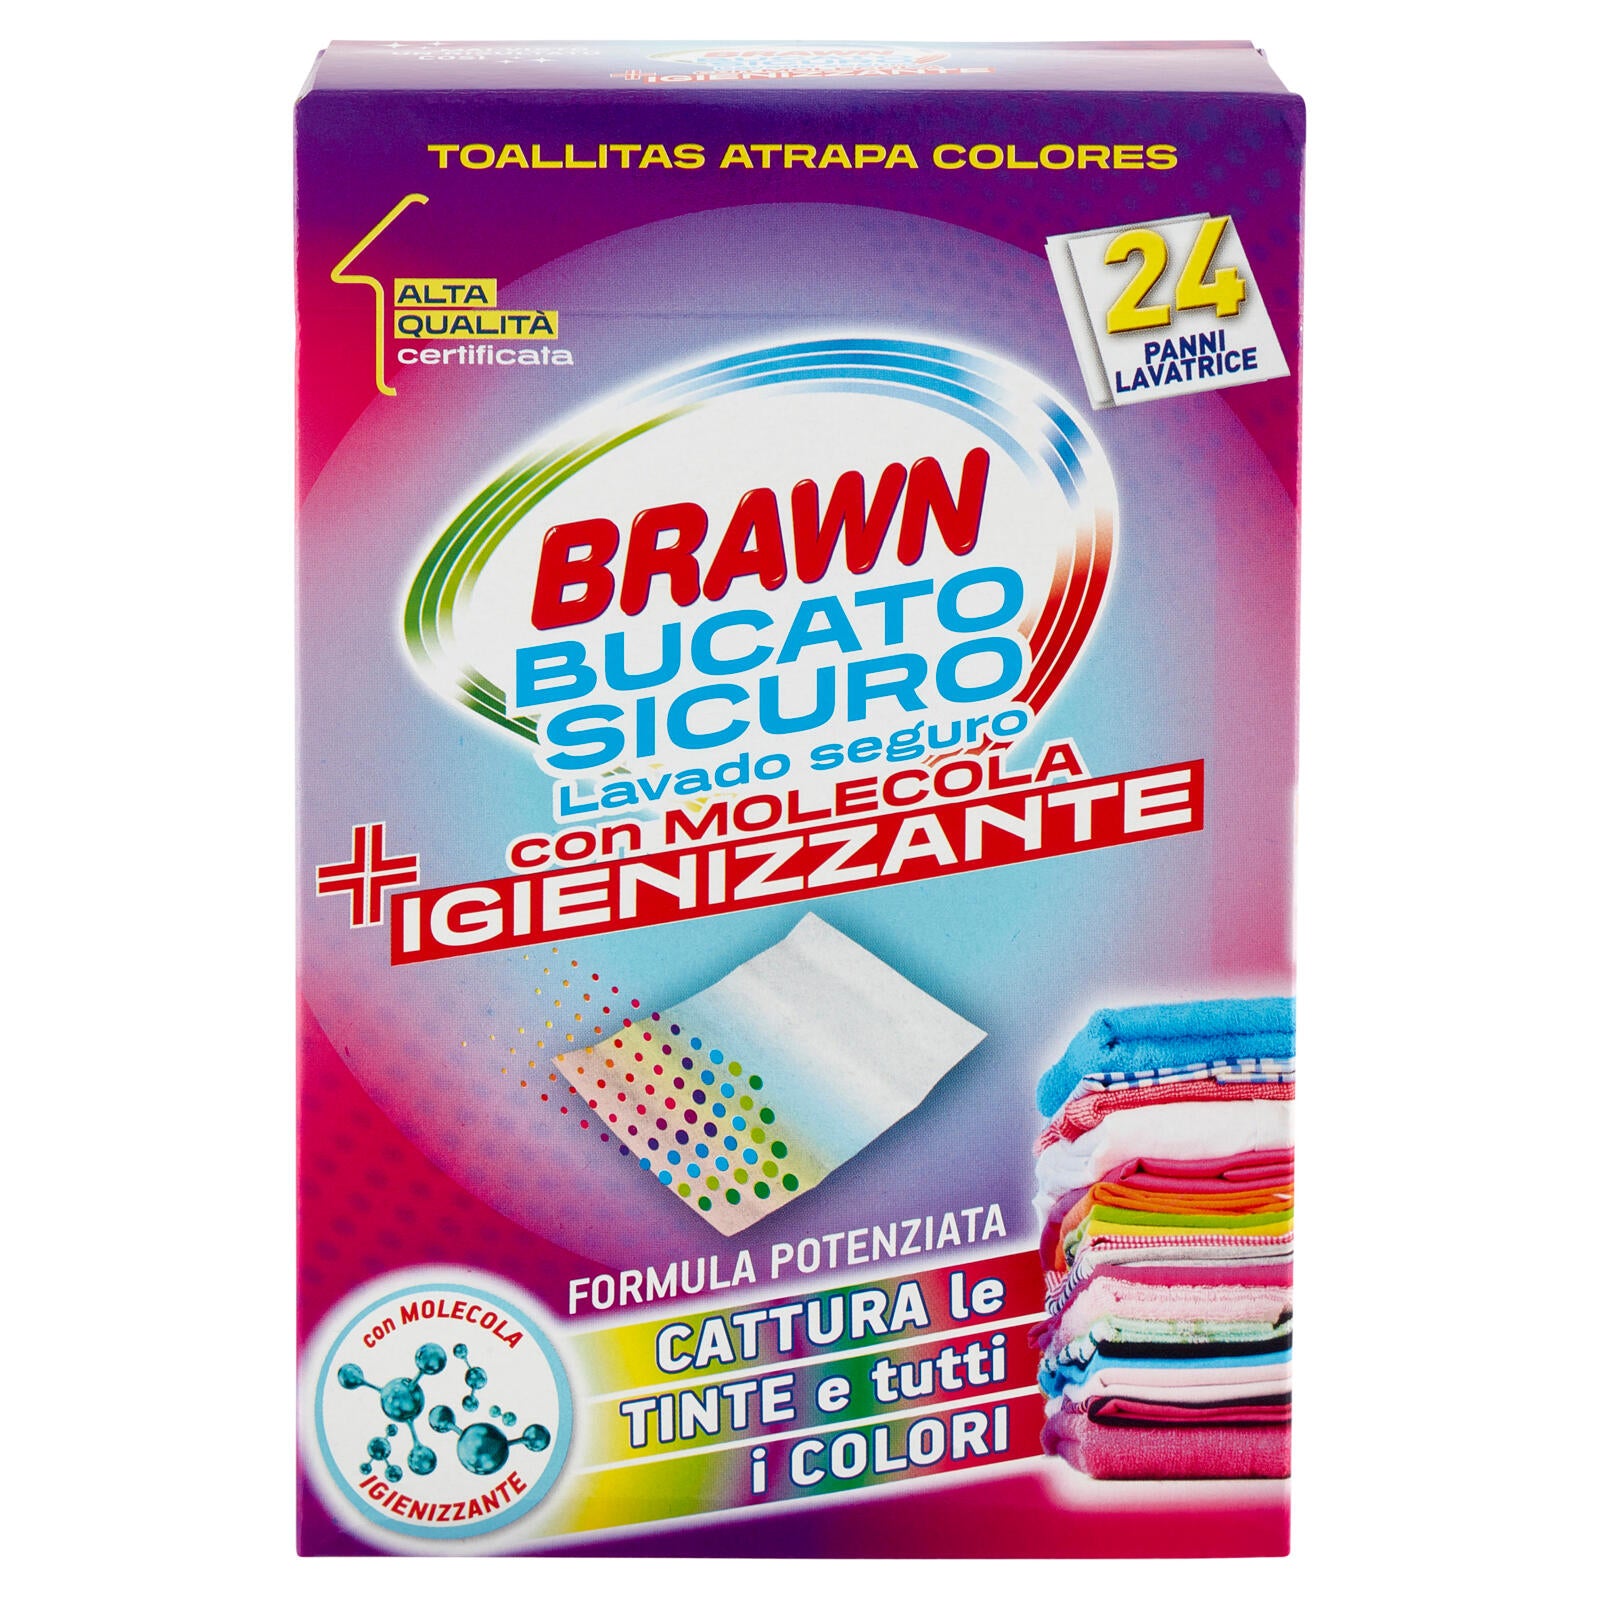 Brawn Bucato Sicuro con Molecola Igienizzante Panni Lavatrice 24 pz